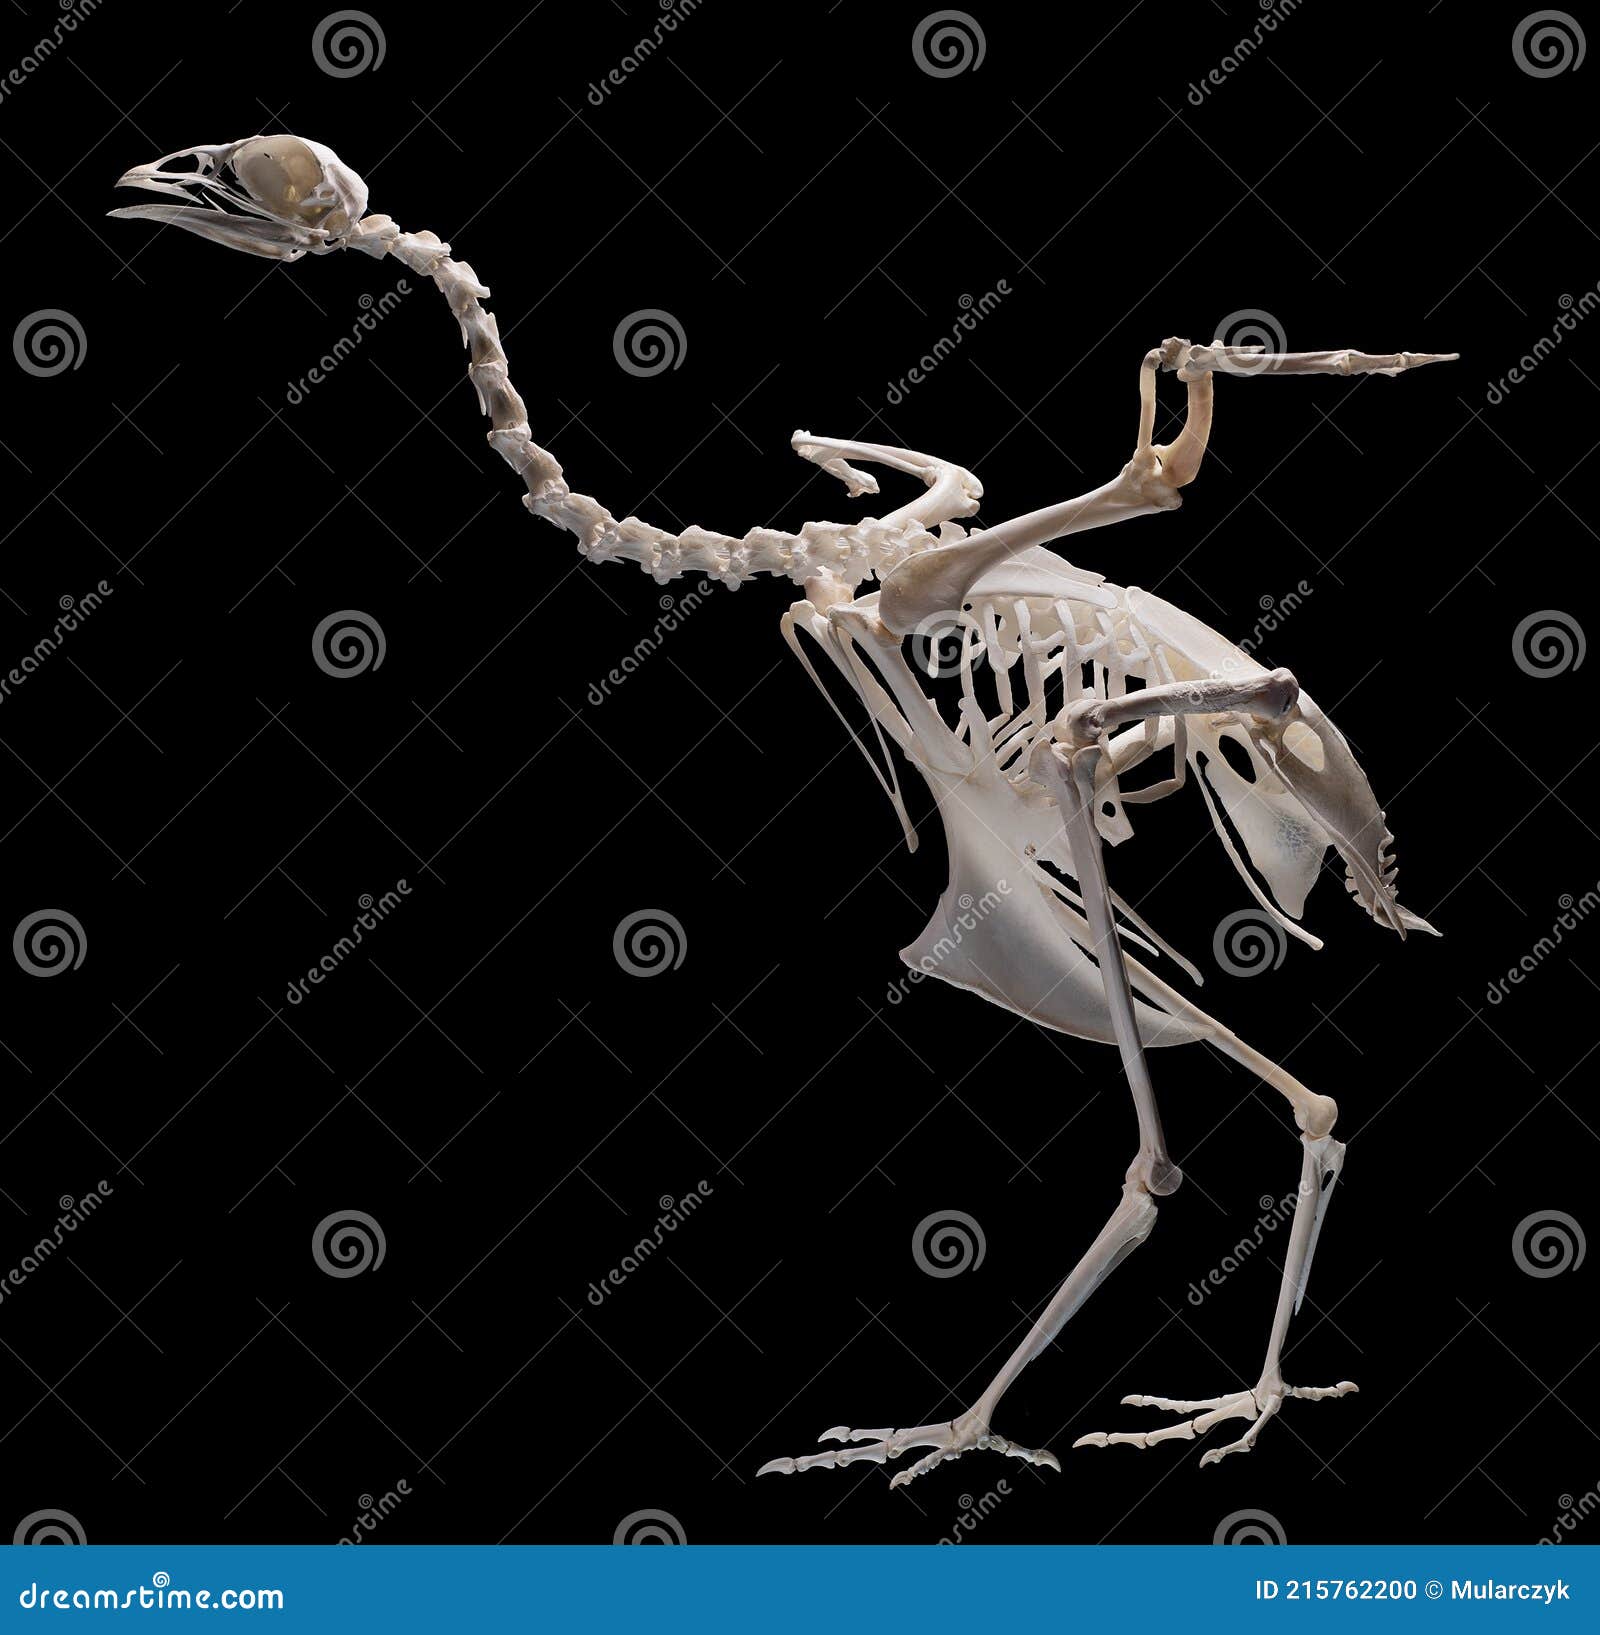 Xương chim được tìm thấy cách đây hàng trăm năm và vẫn là đề tài của nhiều học giả nghiên cứu về loài chim mất tích. Chúng ta đã khám phá được bao nhiêu bí ẩn về các xương chim này? Hãy xem hình ảnh đầy sức hút này để khám phá thêm về xương chim và cuộc sống của chúng trong quá khứ. (Translation: Bird skeletons were found hundreds of years ago and still fascinate many scholars studying extinct bird species. How many secrets have we uncovered about these bird skeletons? Watch this attractive image to discover more about bird skeletons and their life in the past.)